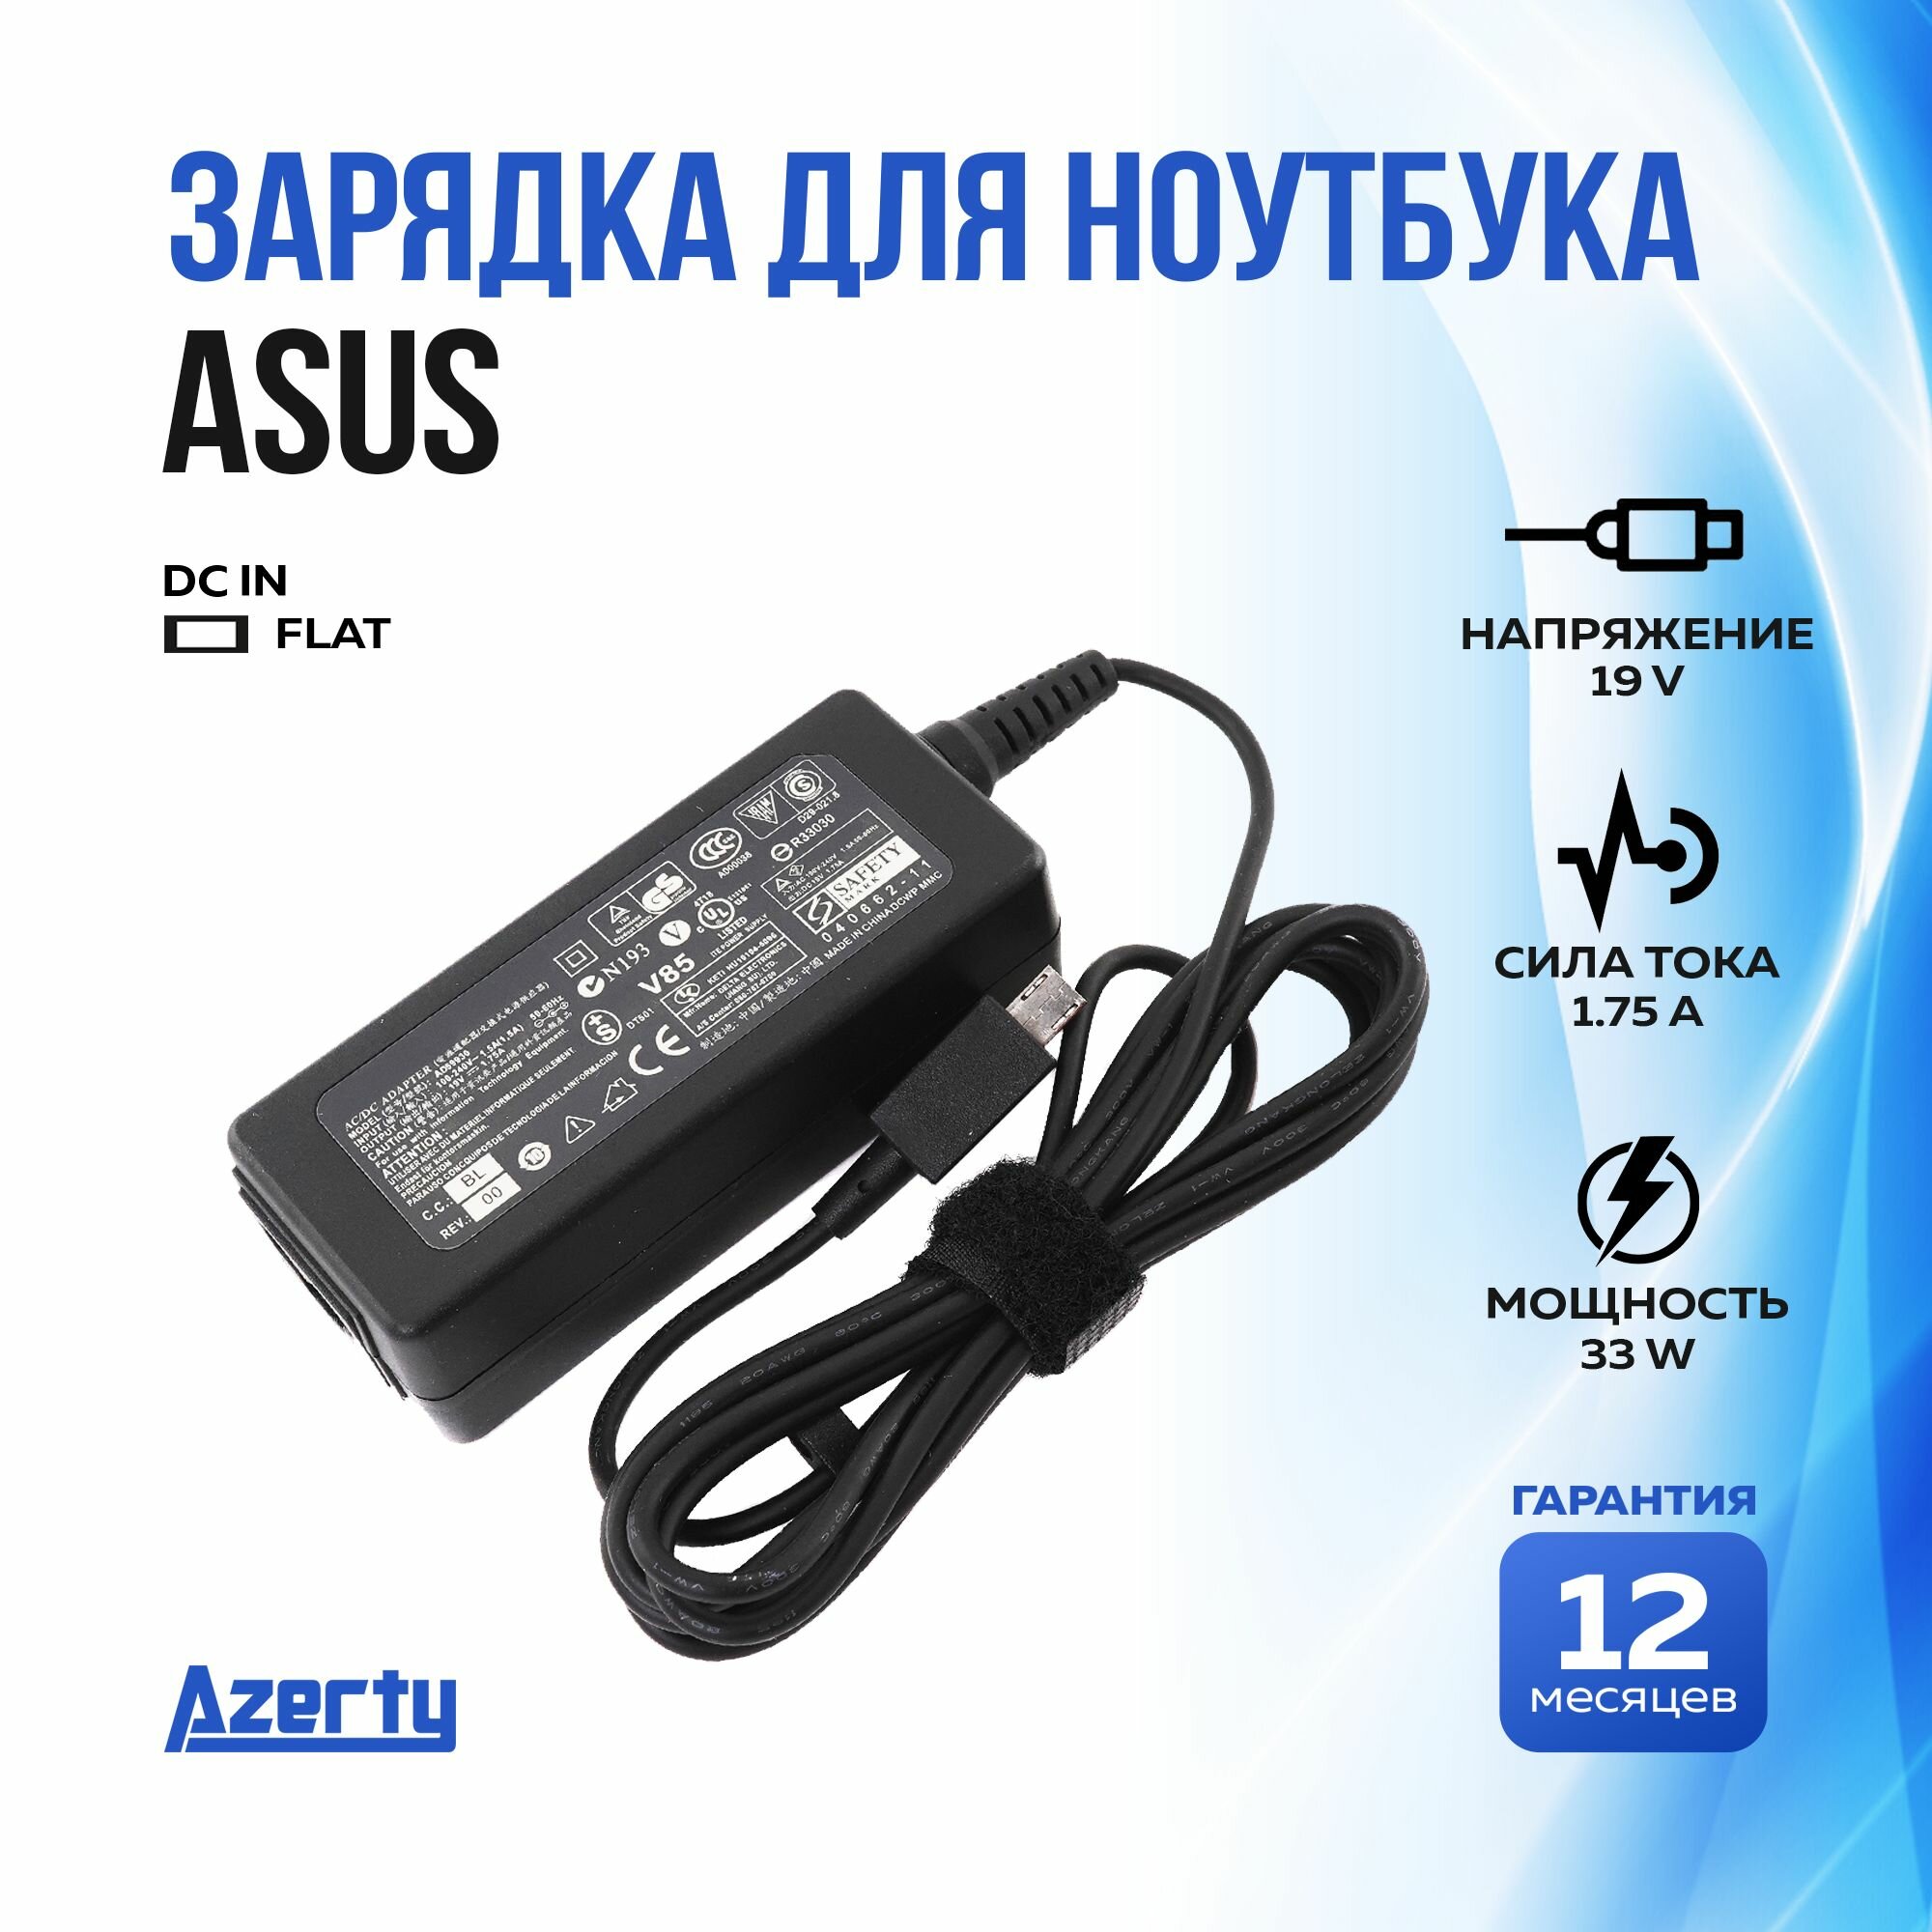 Зарядка для ноутбука Asus 19V 1.75A (33W) Flat без кабеля